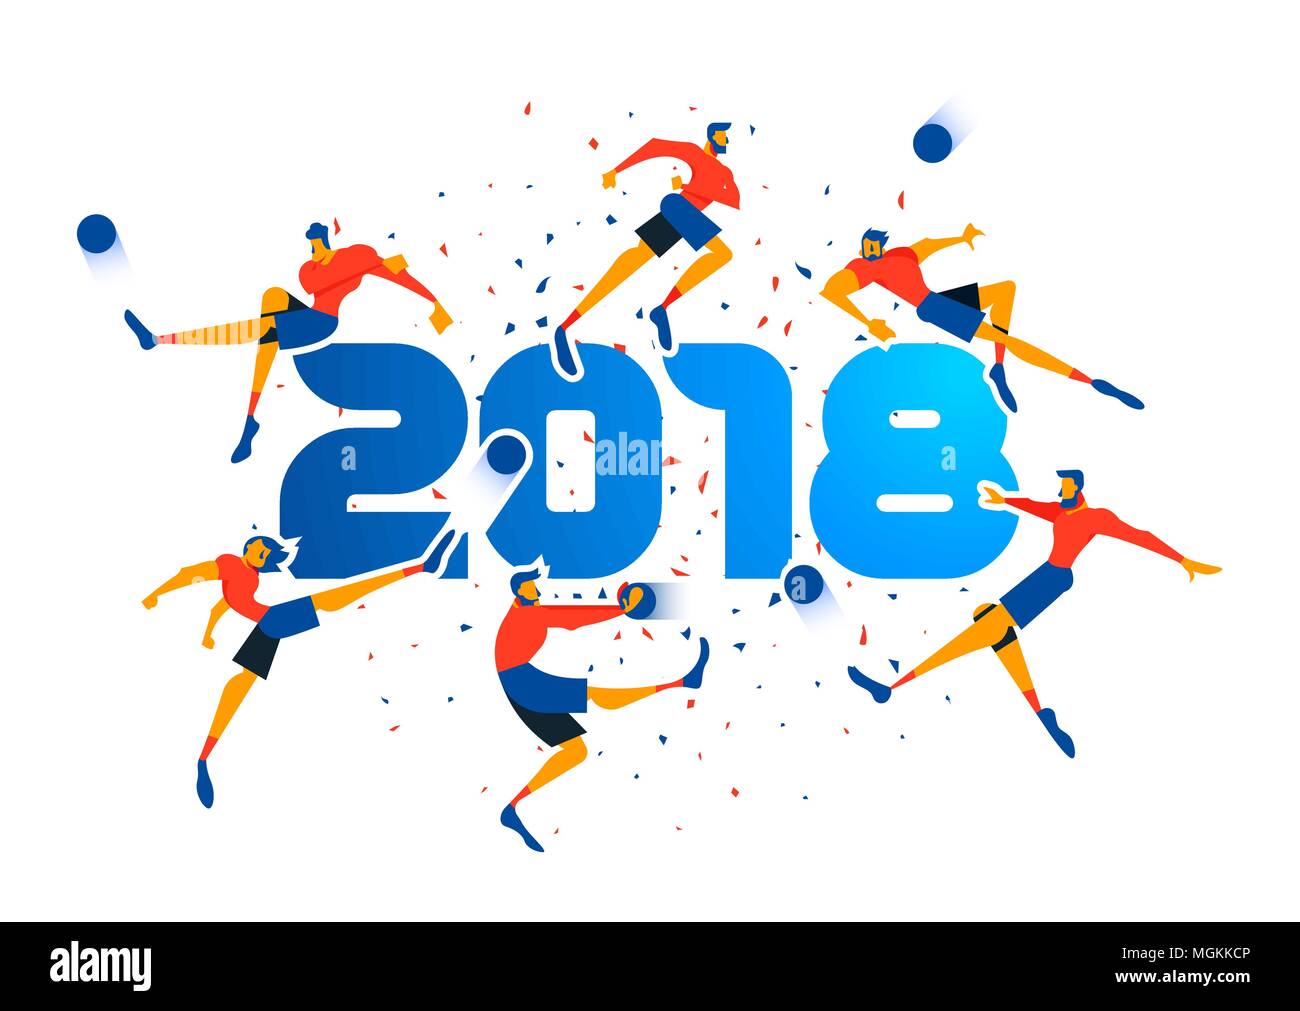 Festliche Plakatgestaltung für einen Sport 2018 Veranstaltung. Fußball-Mannschaft mit Ball mit Konfetti Hintergrund und Typografie. EPS 10 Vektor. Stock Vektor